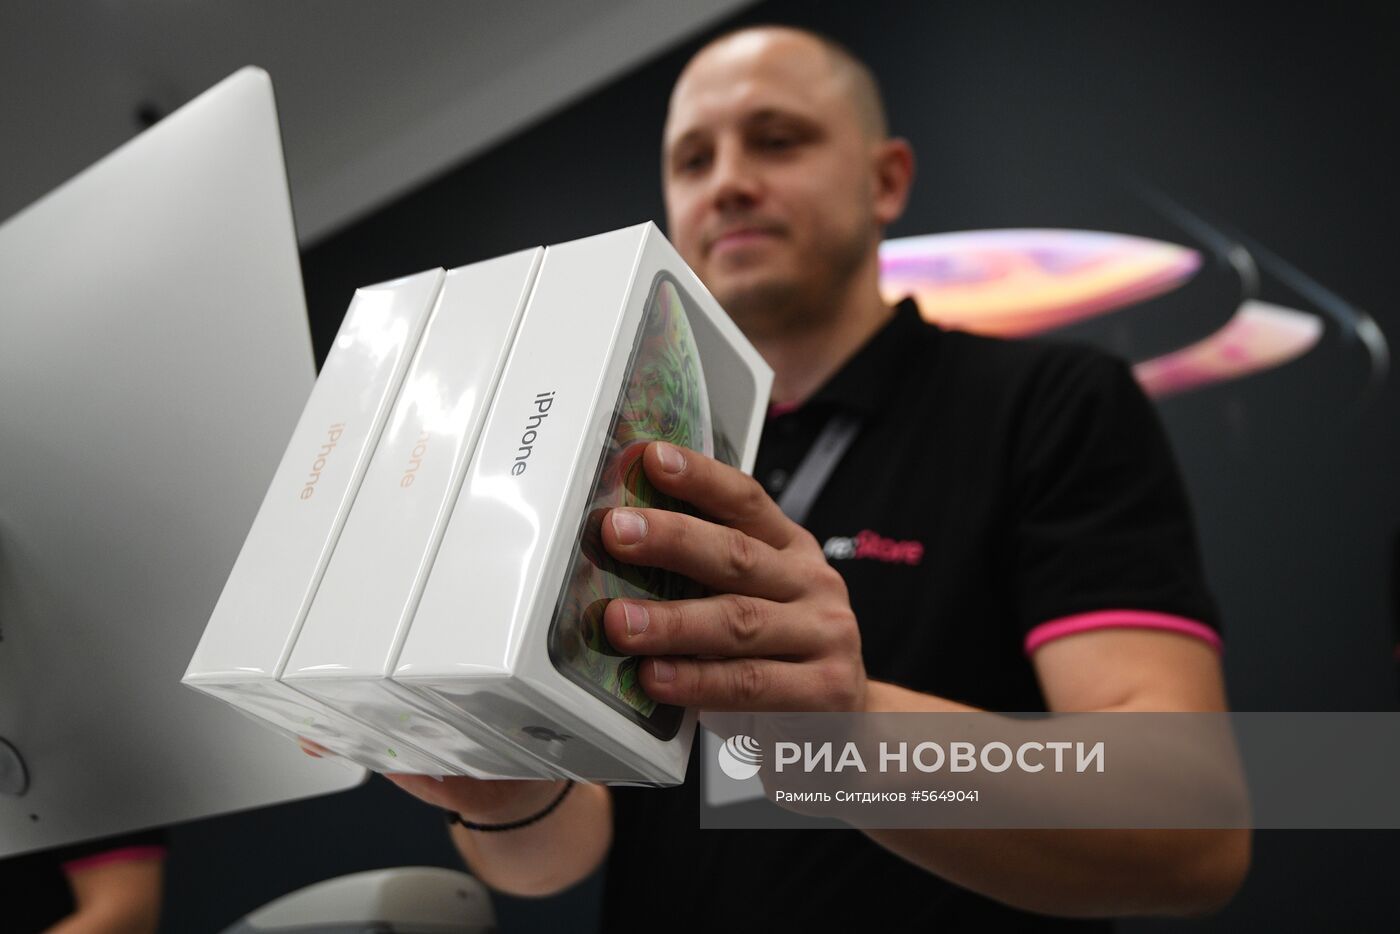 Старт продаж в России iPhone XS и XS Max 